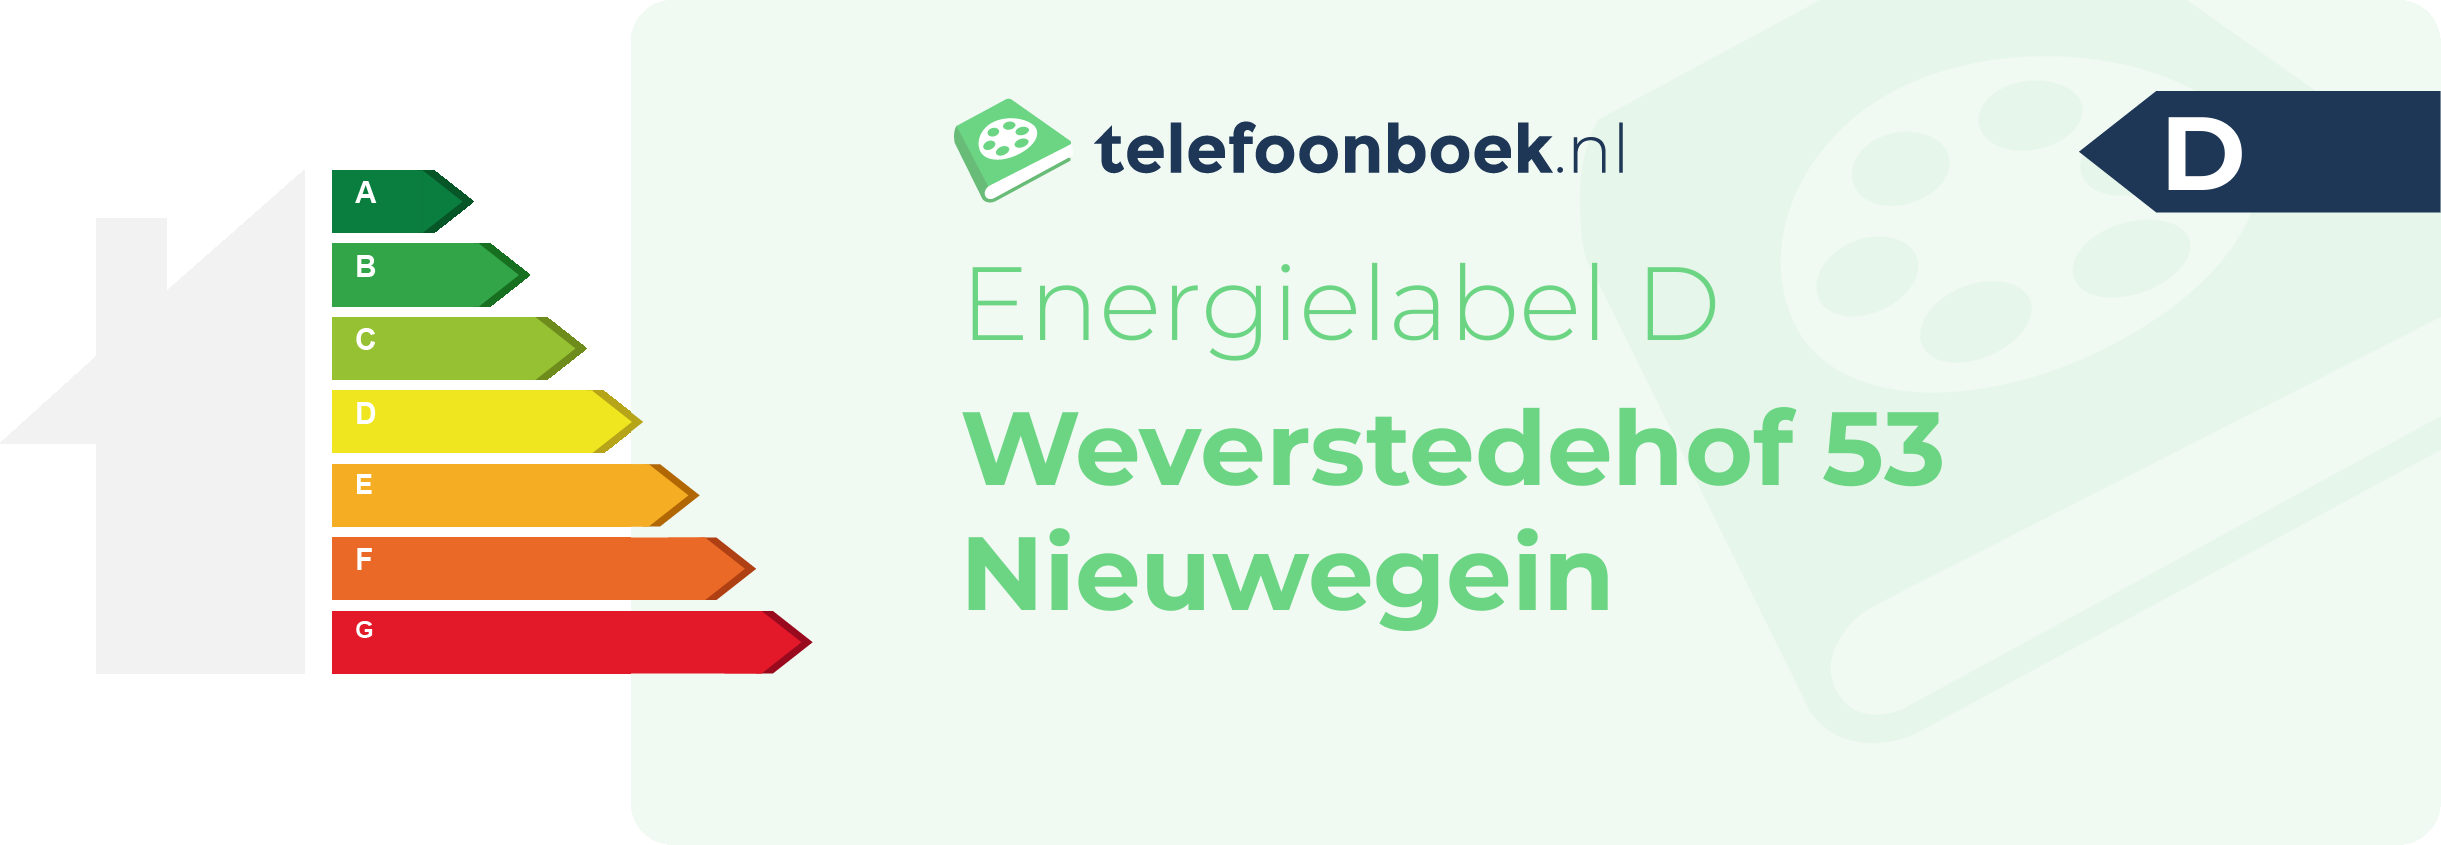 Energielabel Weverstedehof 53 Nieuwegein